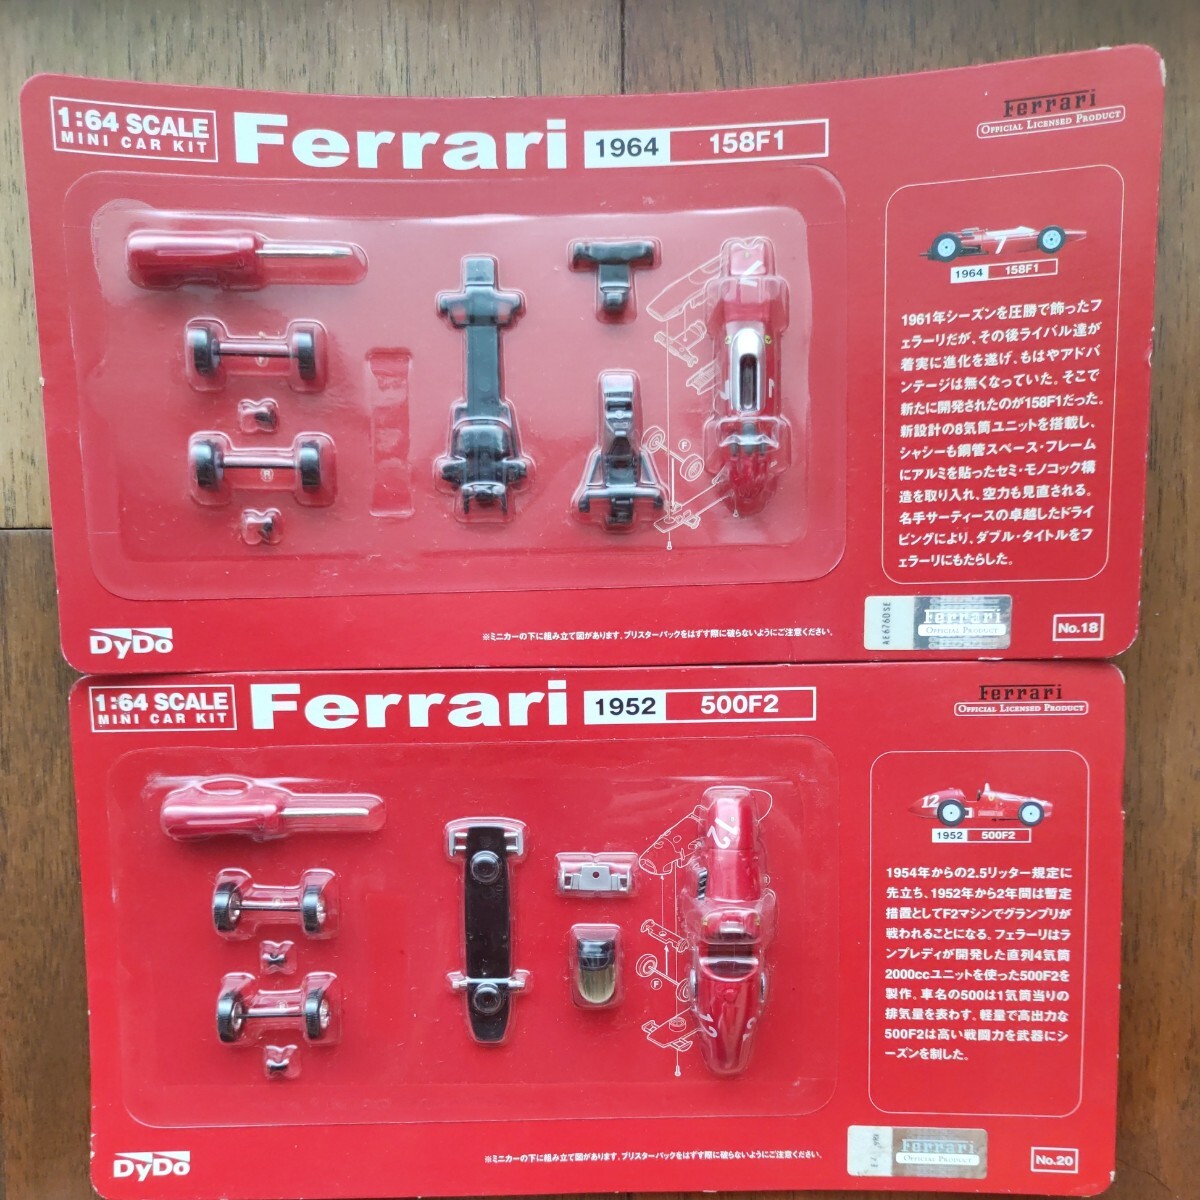 ダイドー 京商 フェラーリ F1ミニカー DyDo 1:64 SCALE ミニカーキット Ferrari 158F1 500F2 二台セット の画像1